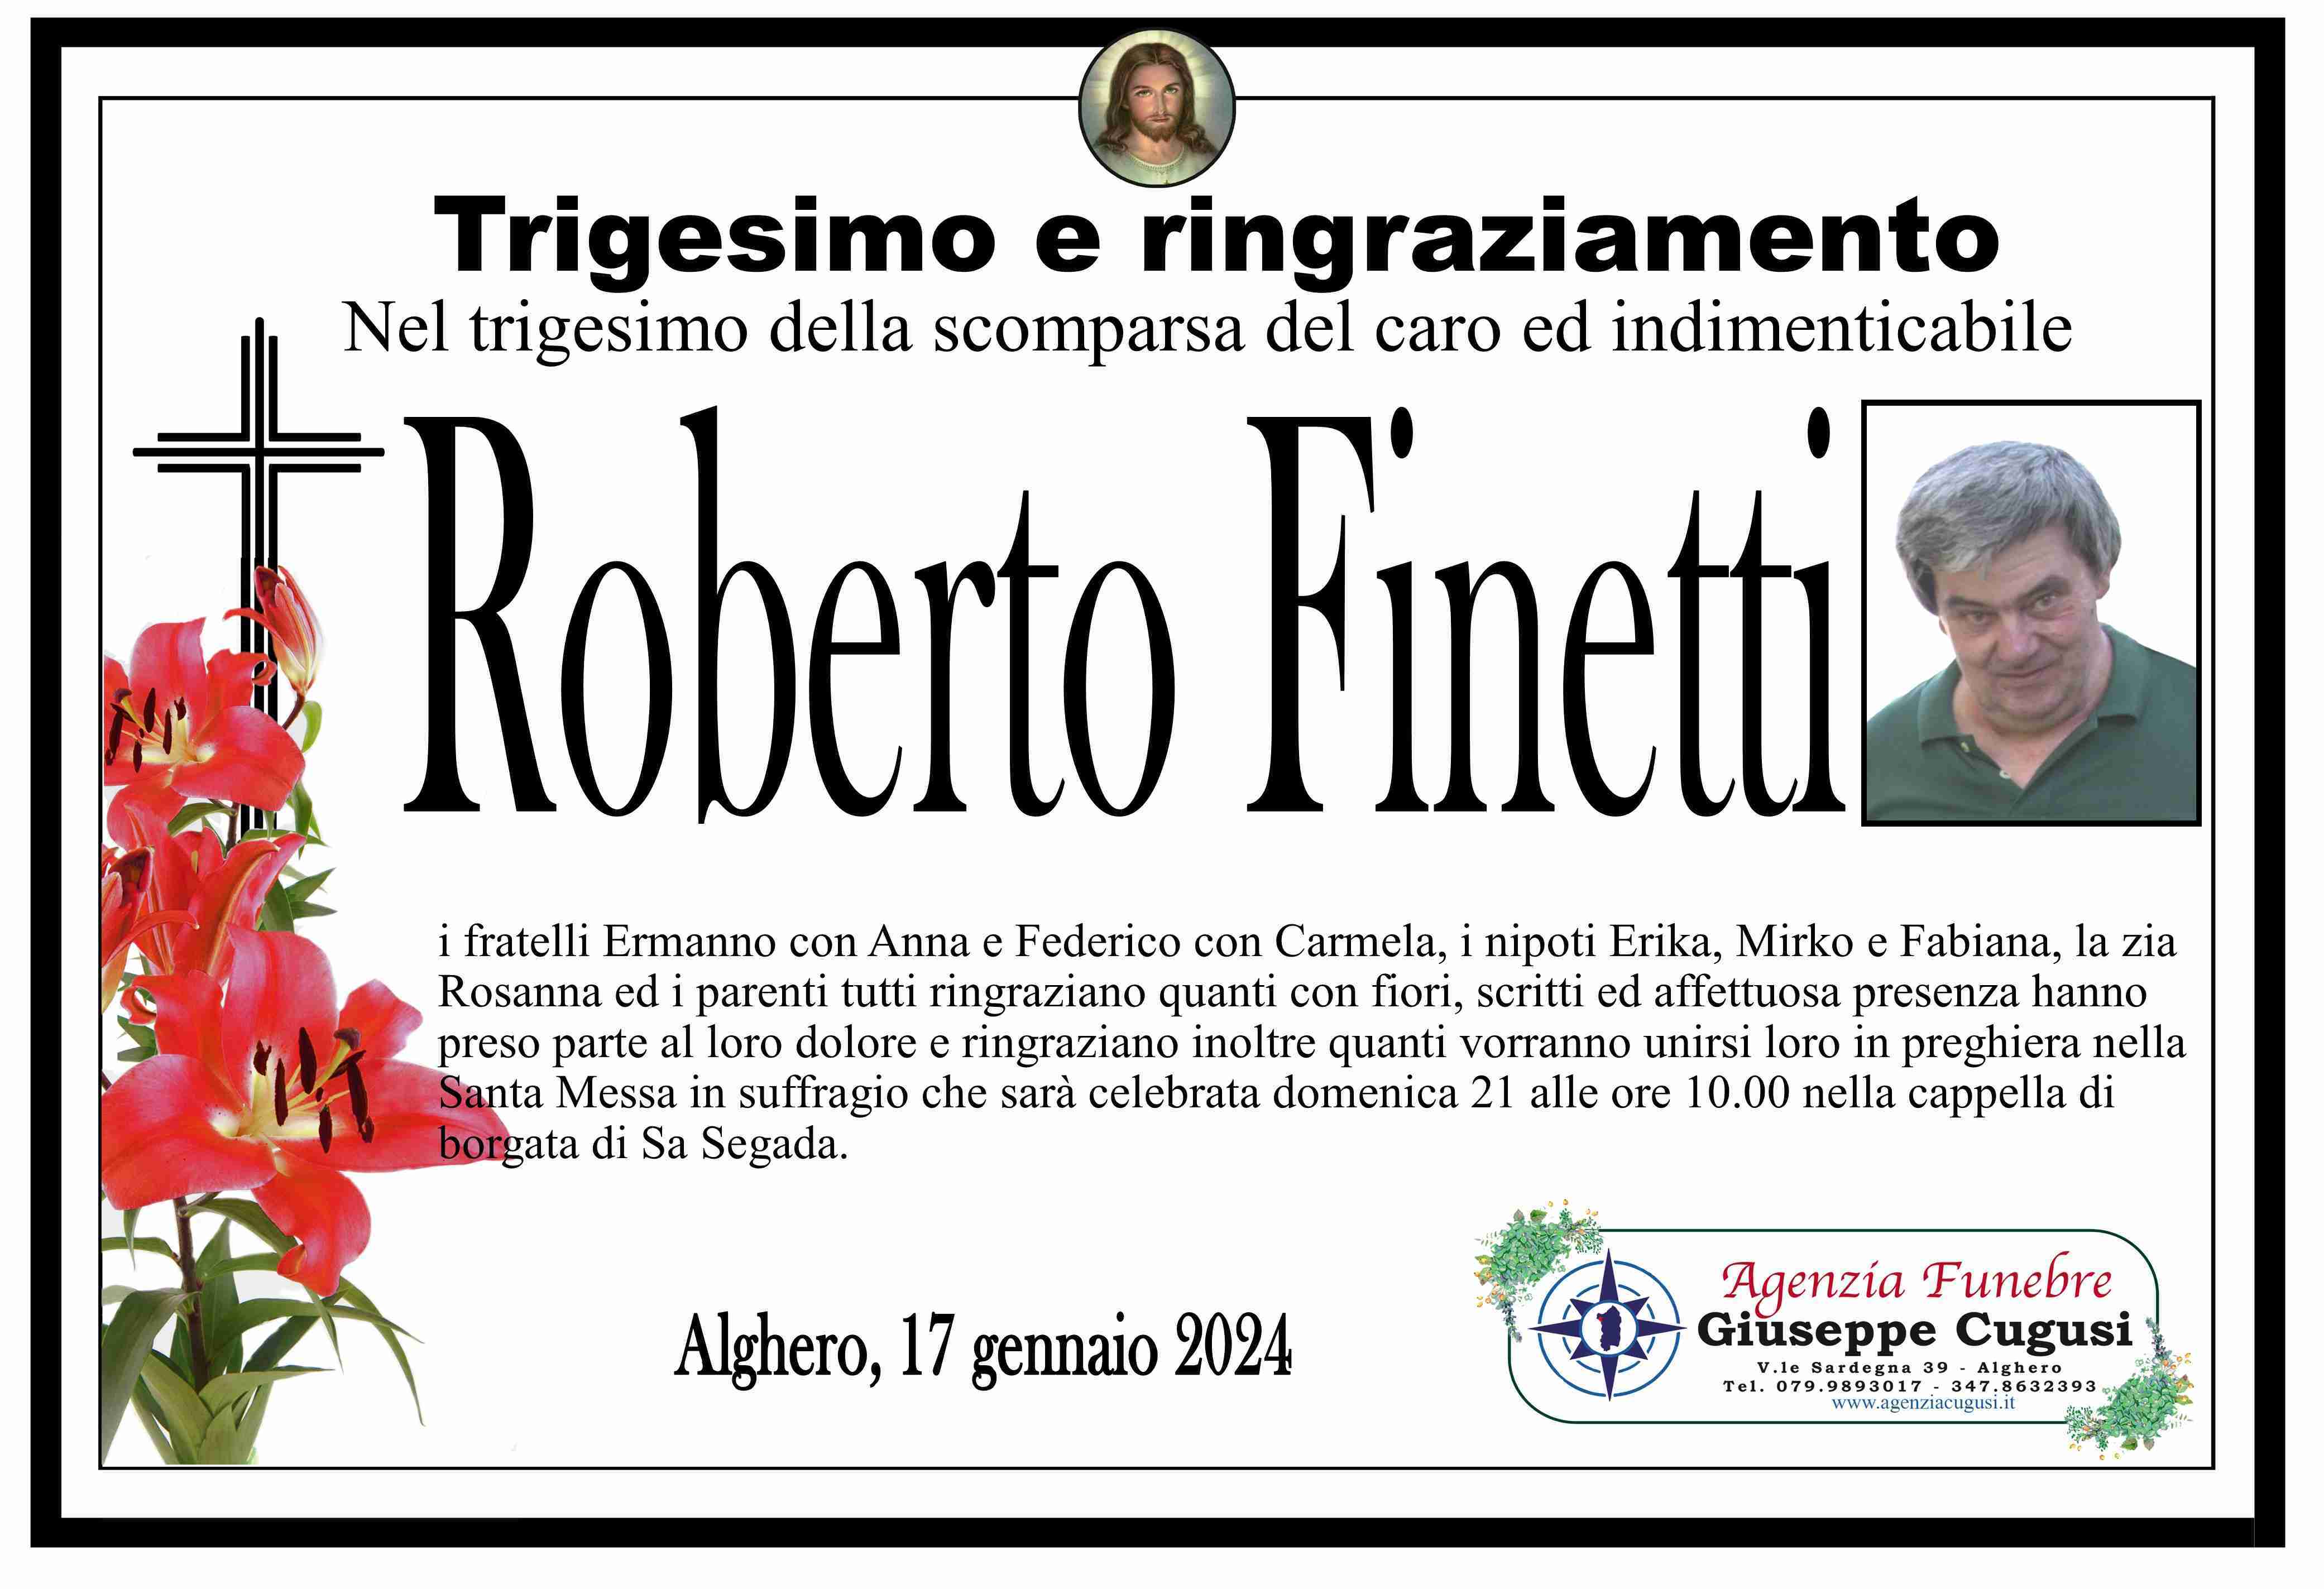 Roberto Finetti